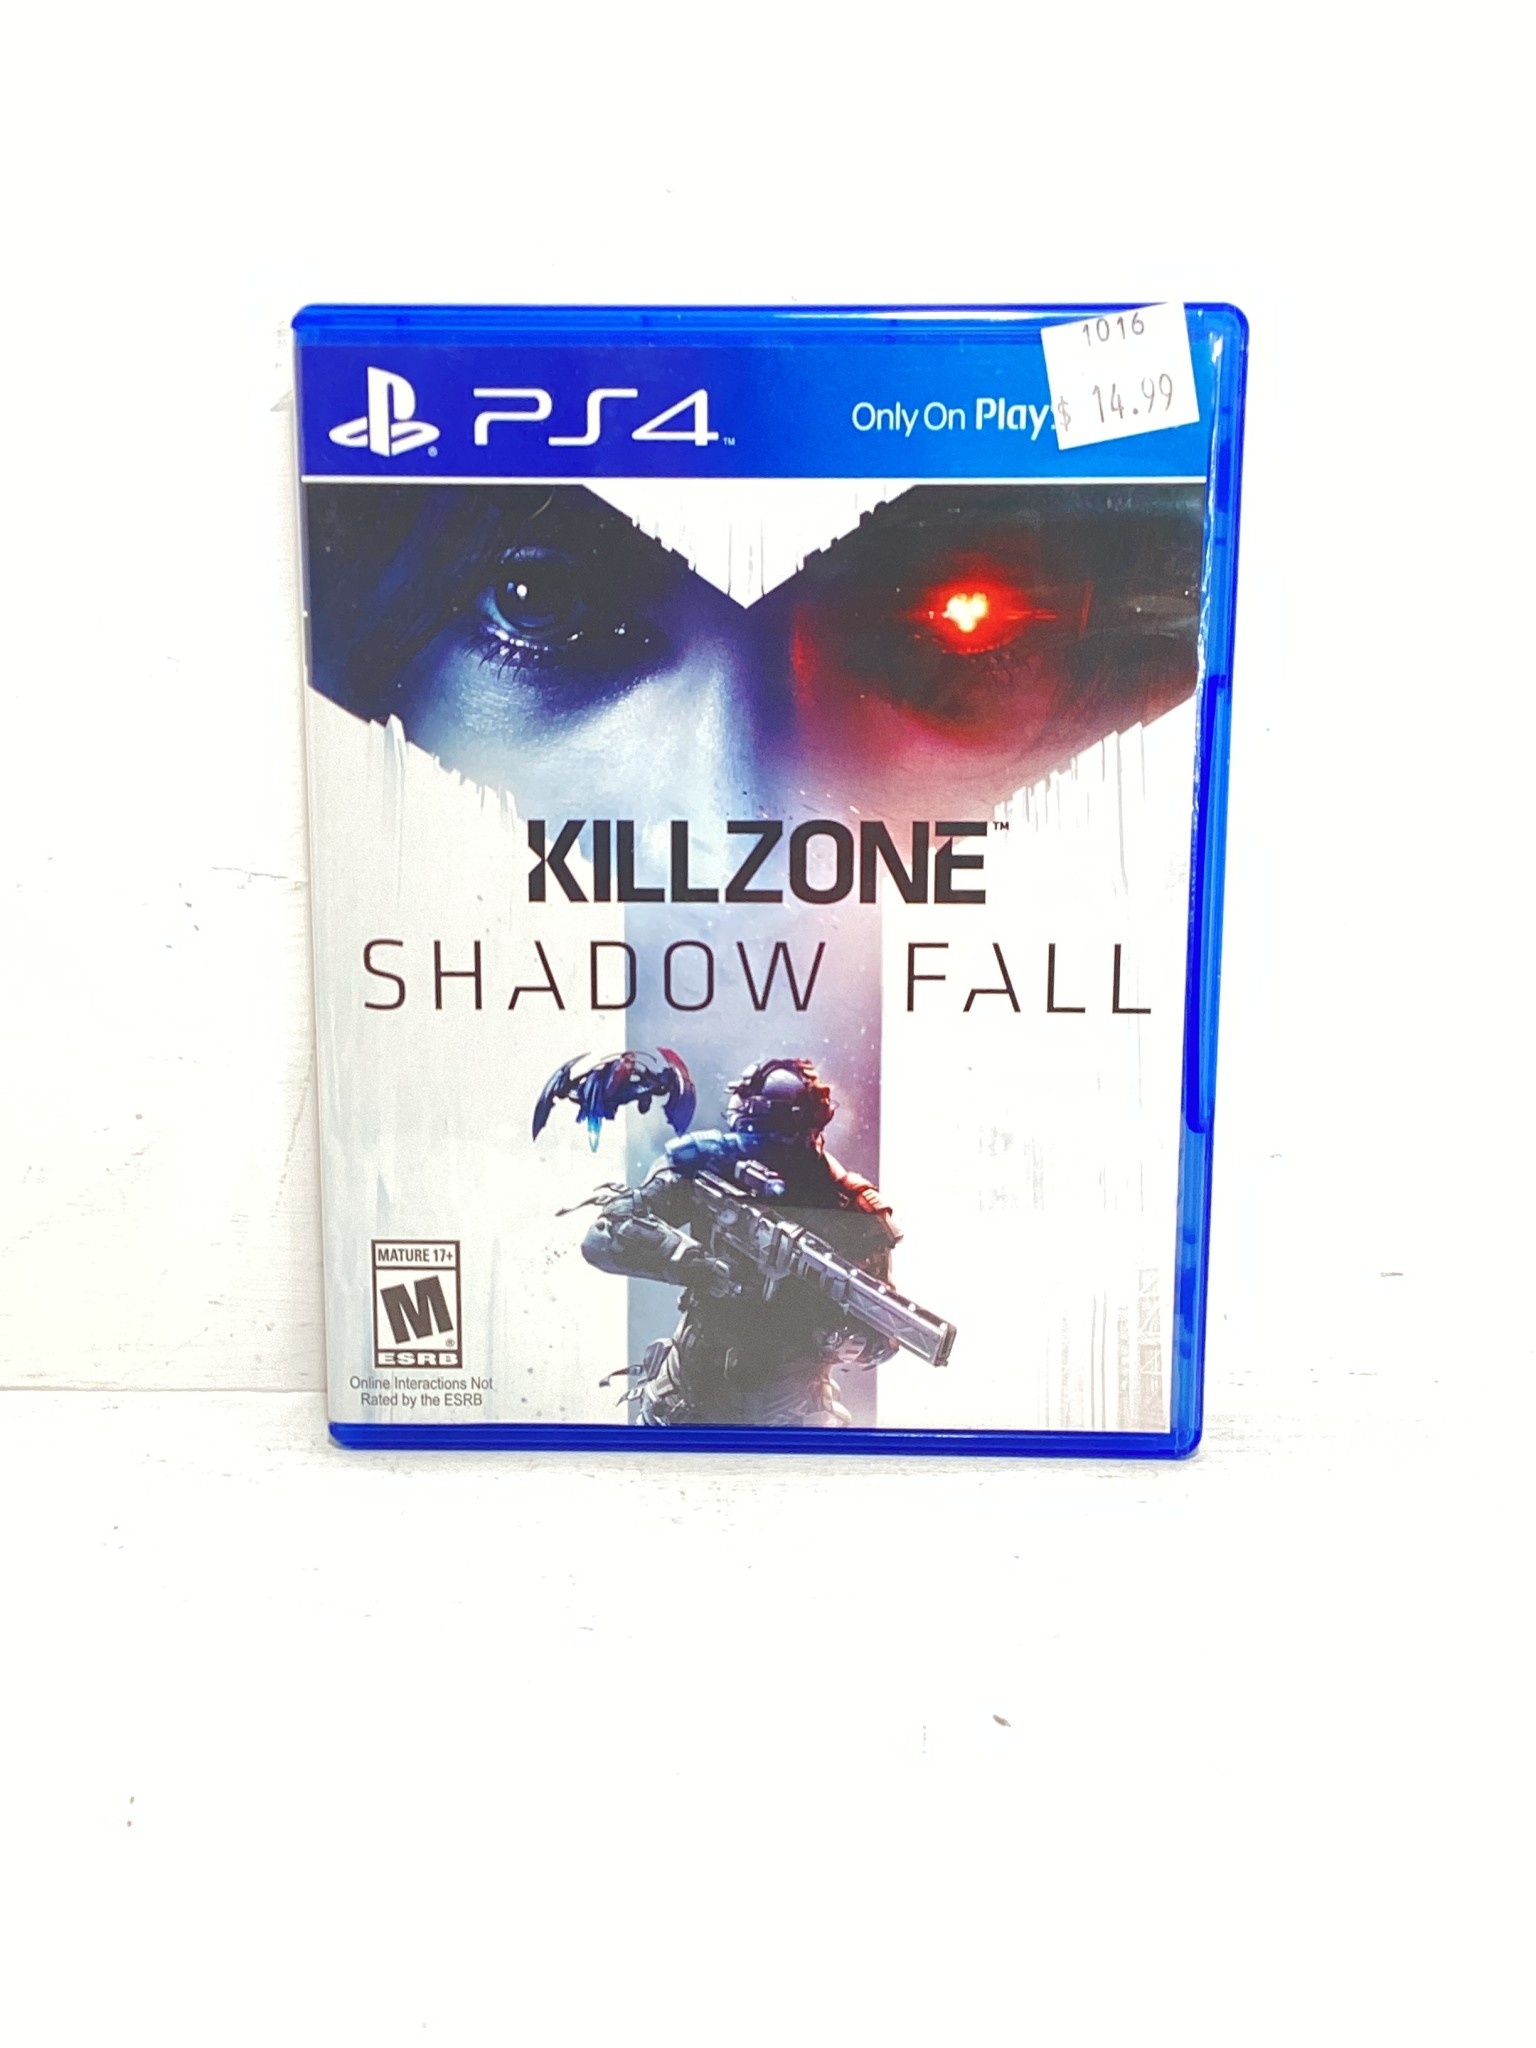 Killzone: Shadow Fall PS4